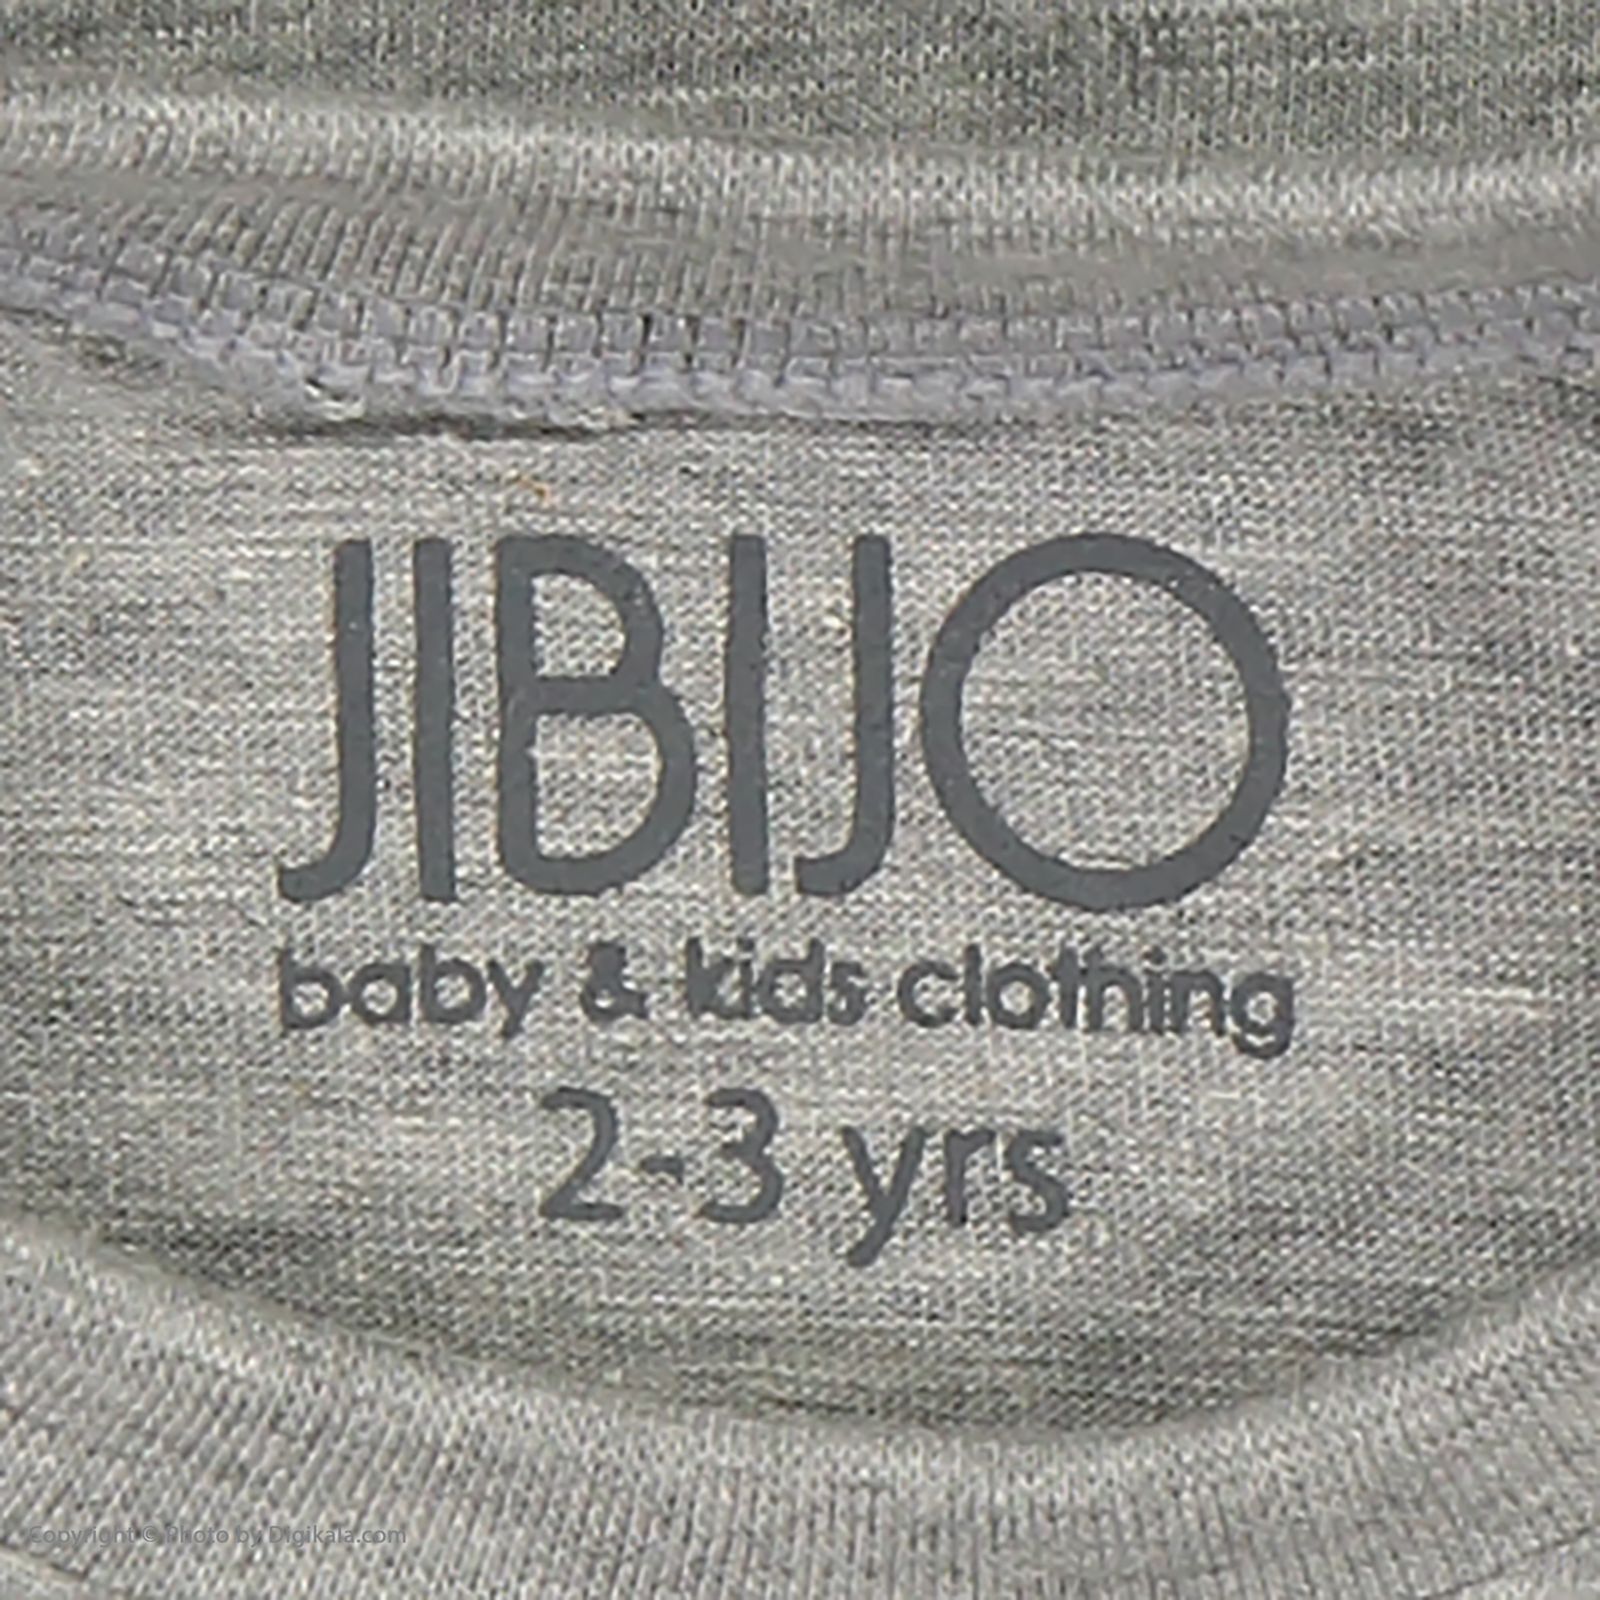 تی شرت پسرانه جی بی جو مدل 2081105-90 -  - 4